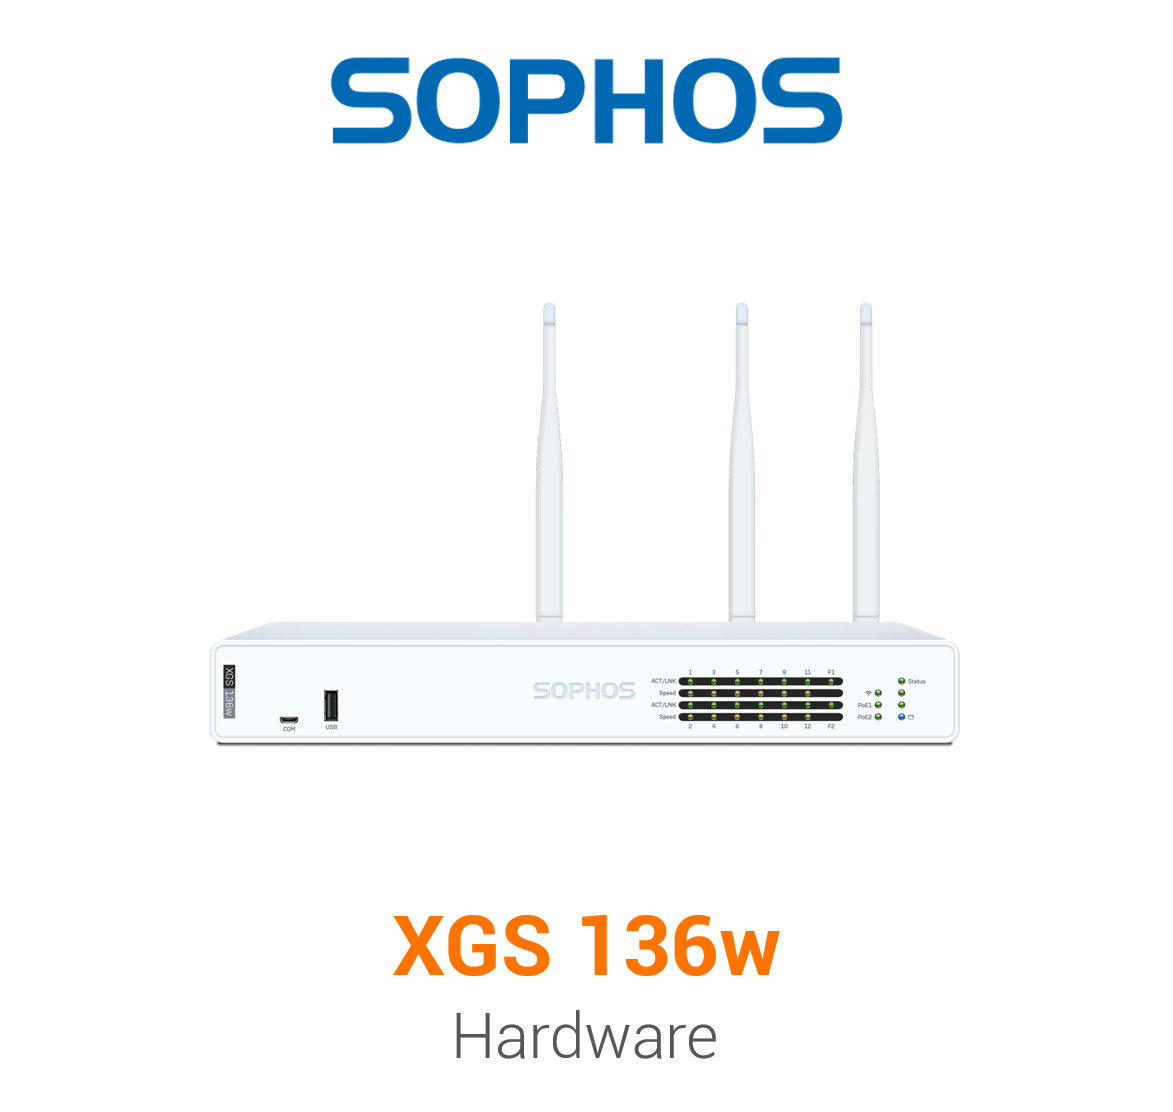 Sophos XGS 136w Security Appliance